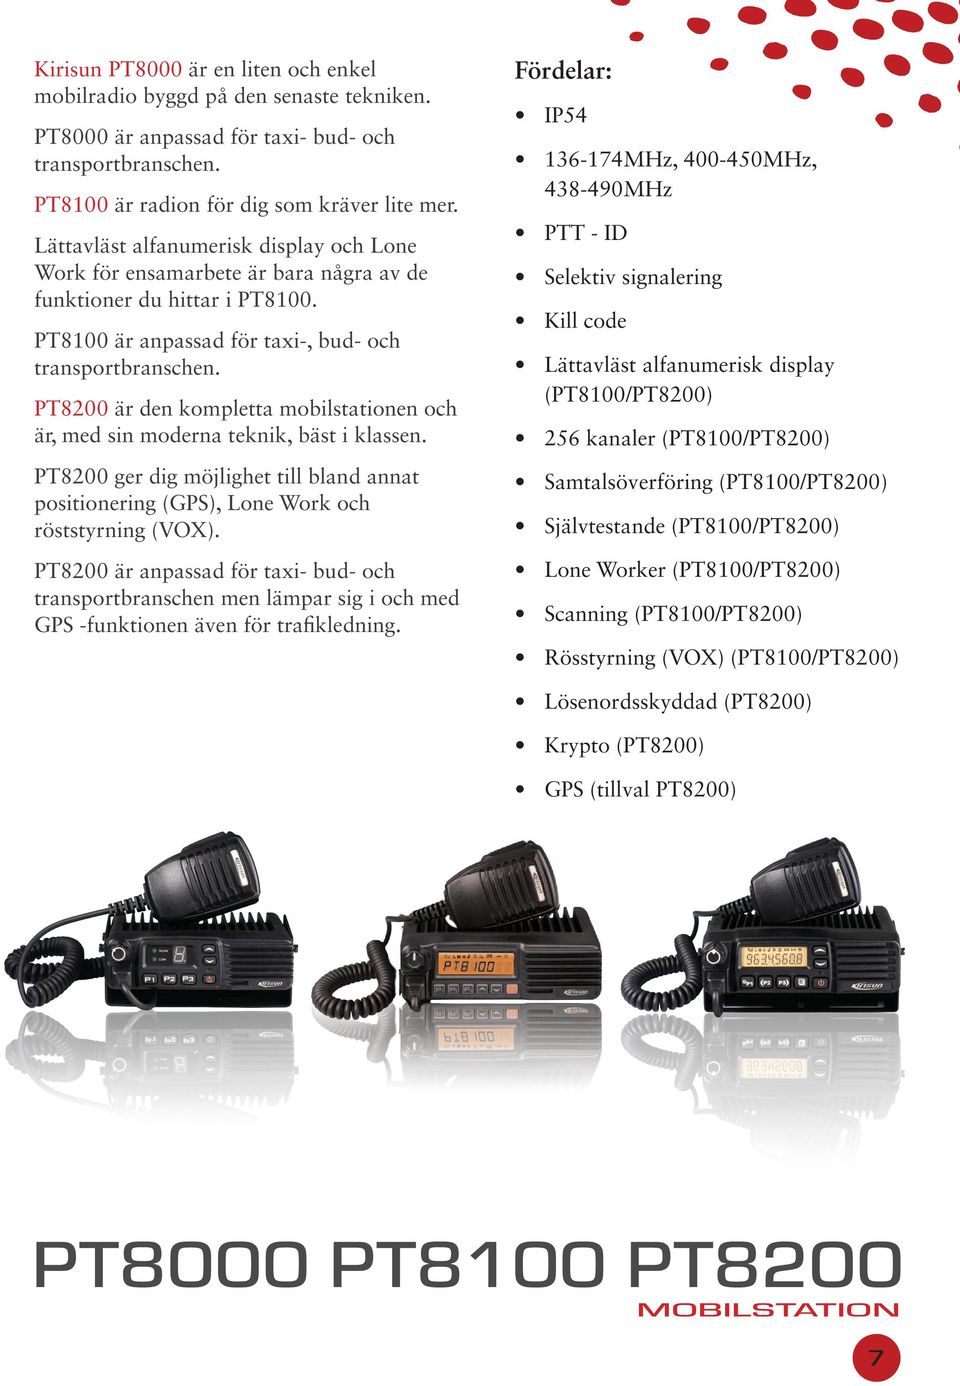 PT8200 är den kompletta mobilstationen och är, med sin moderna teknik, bäst i klassen. PT8200 ger dig möjlighet till bland annat positionering (GPS), Lone Work och röststyrning (VOX).